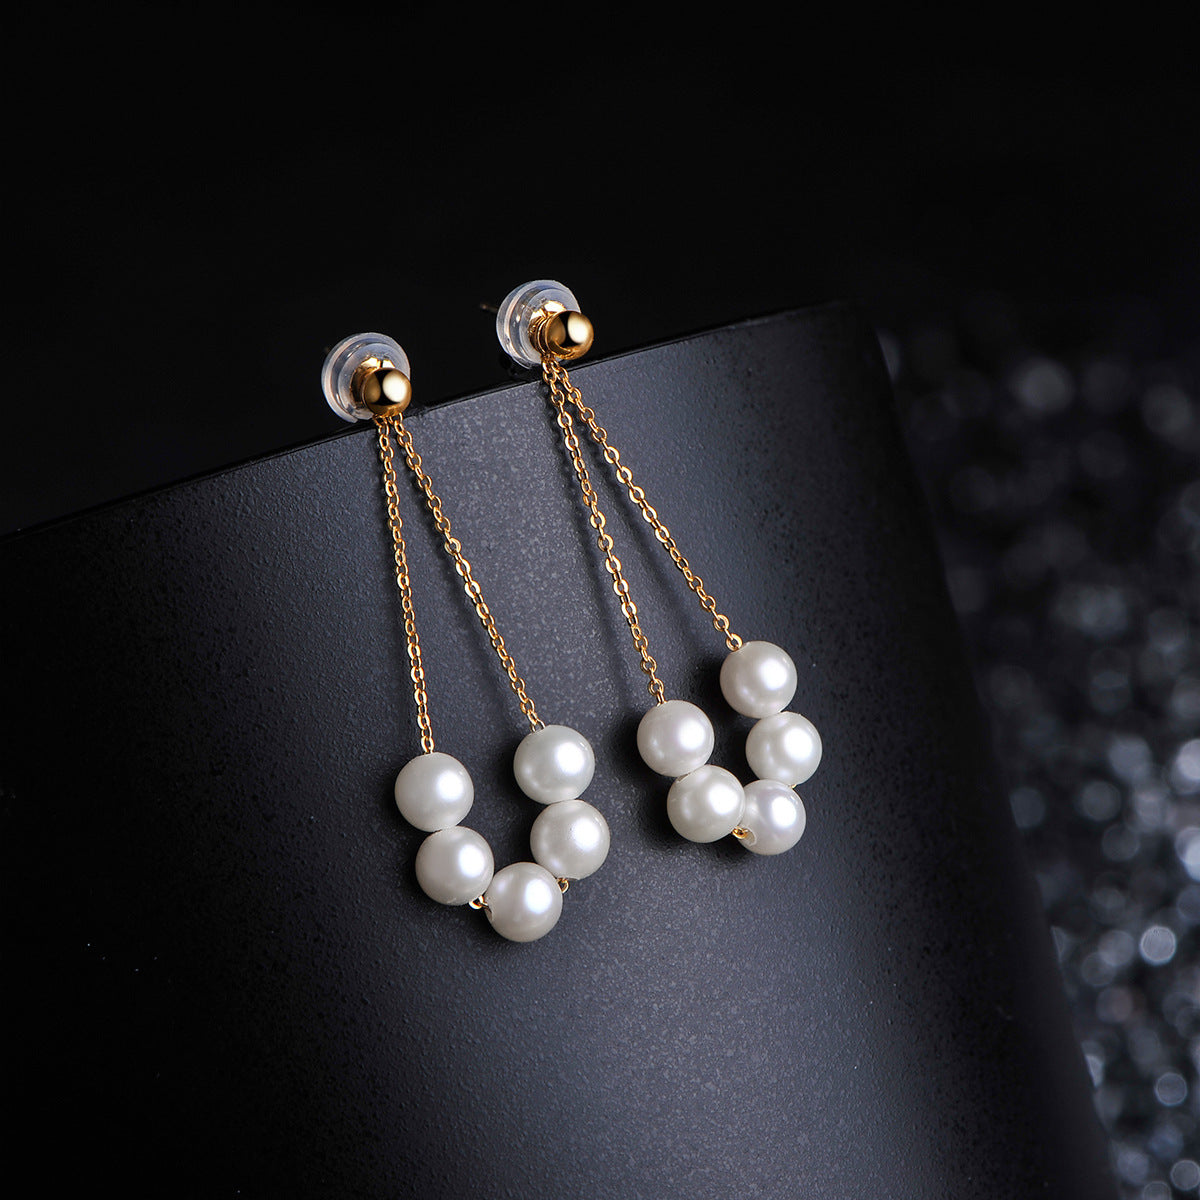 Solid 18K Gold Genuine Freshwater Pearl Flower Basket Earrings